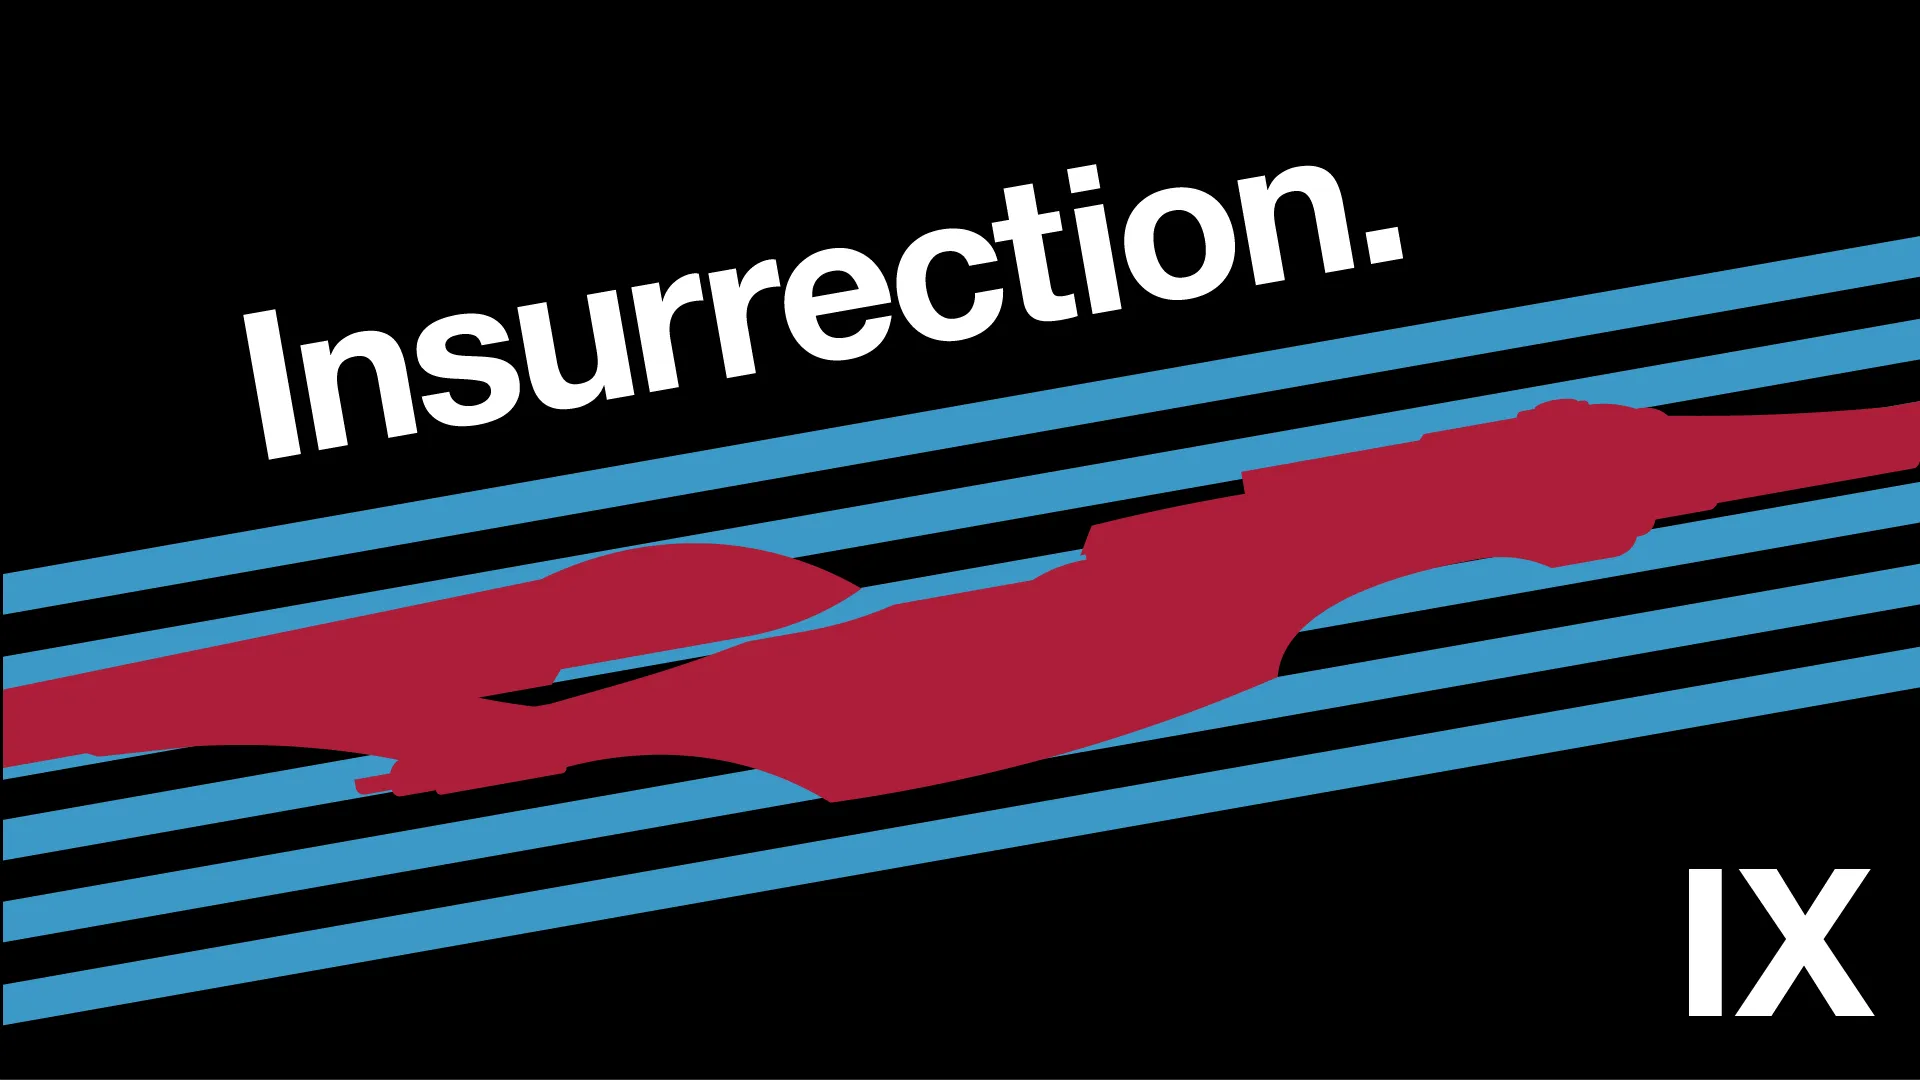 Poster for Star Trek IX: Insurrection.